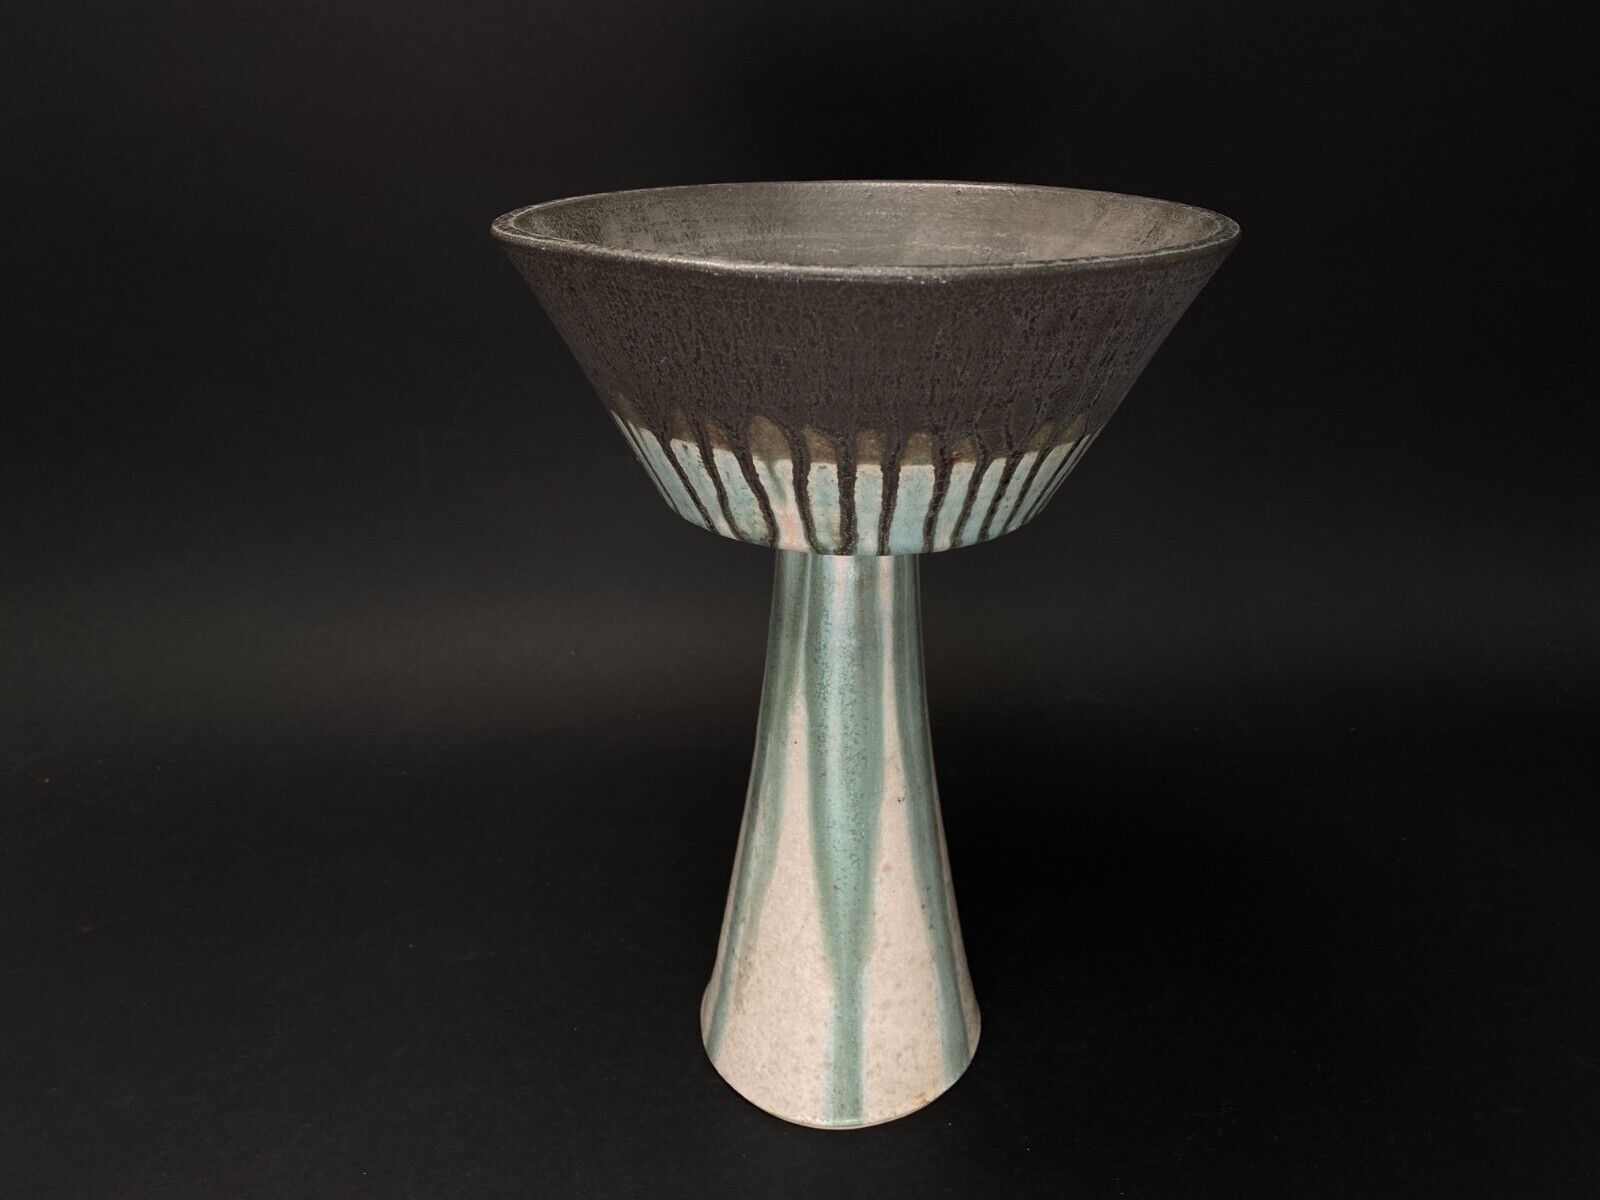 Vintage Japanese Ikebana Pedestal Vase Compote big Pot pottery Wabi sabi H11”